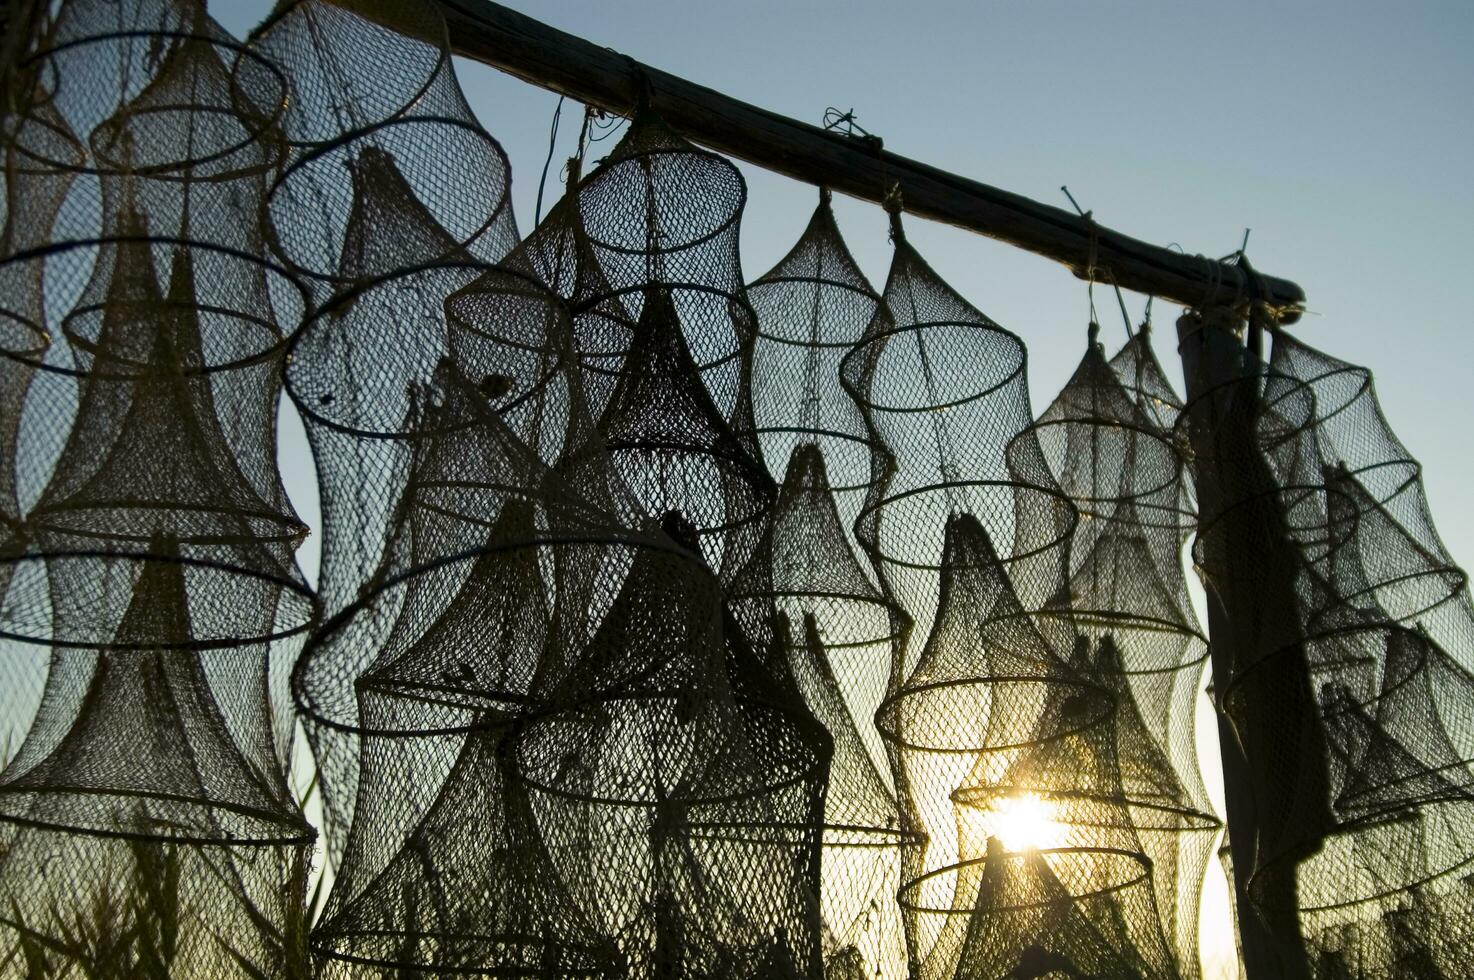 ein Gruppe von Angeln Netze im das Sonne foto